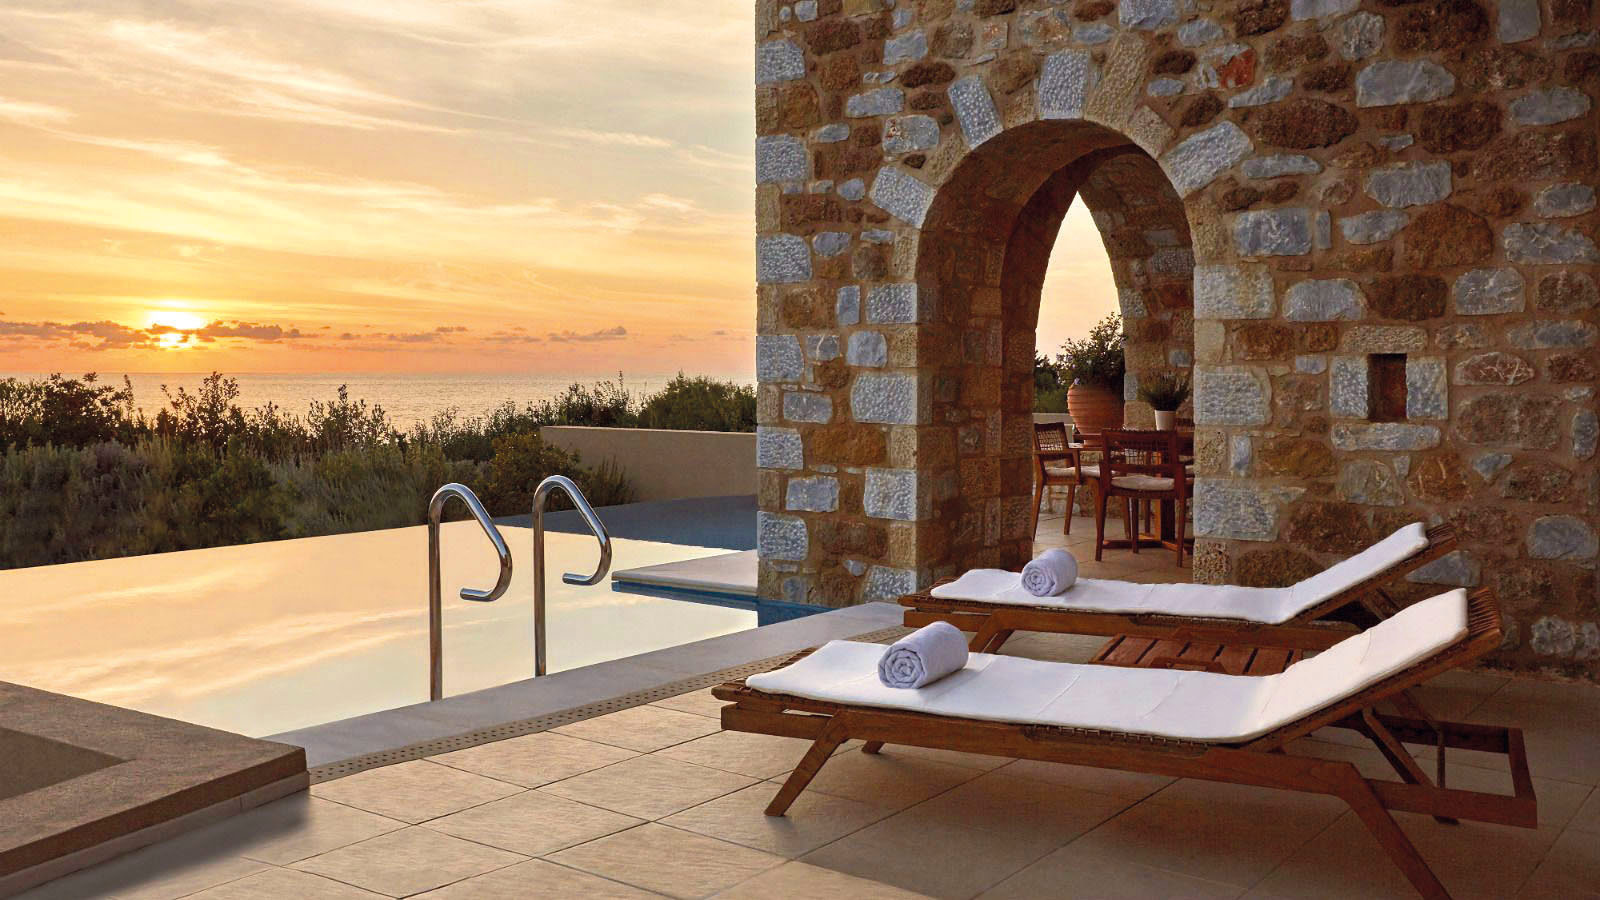 The Westin Resort Costa Navarino - Greece